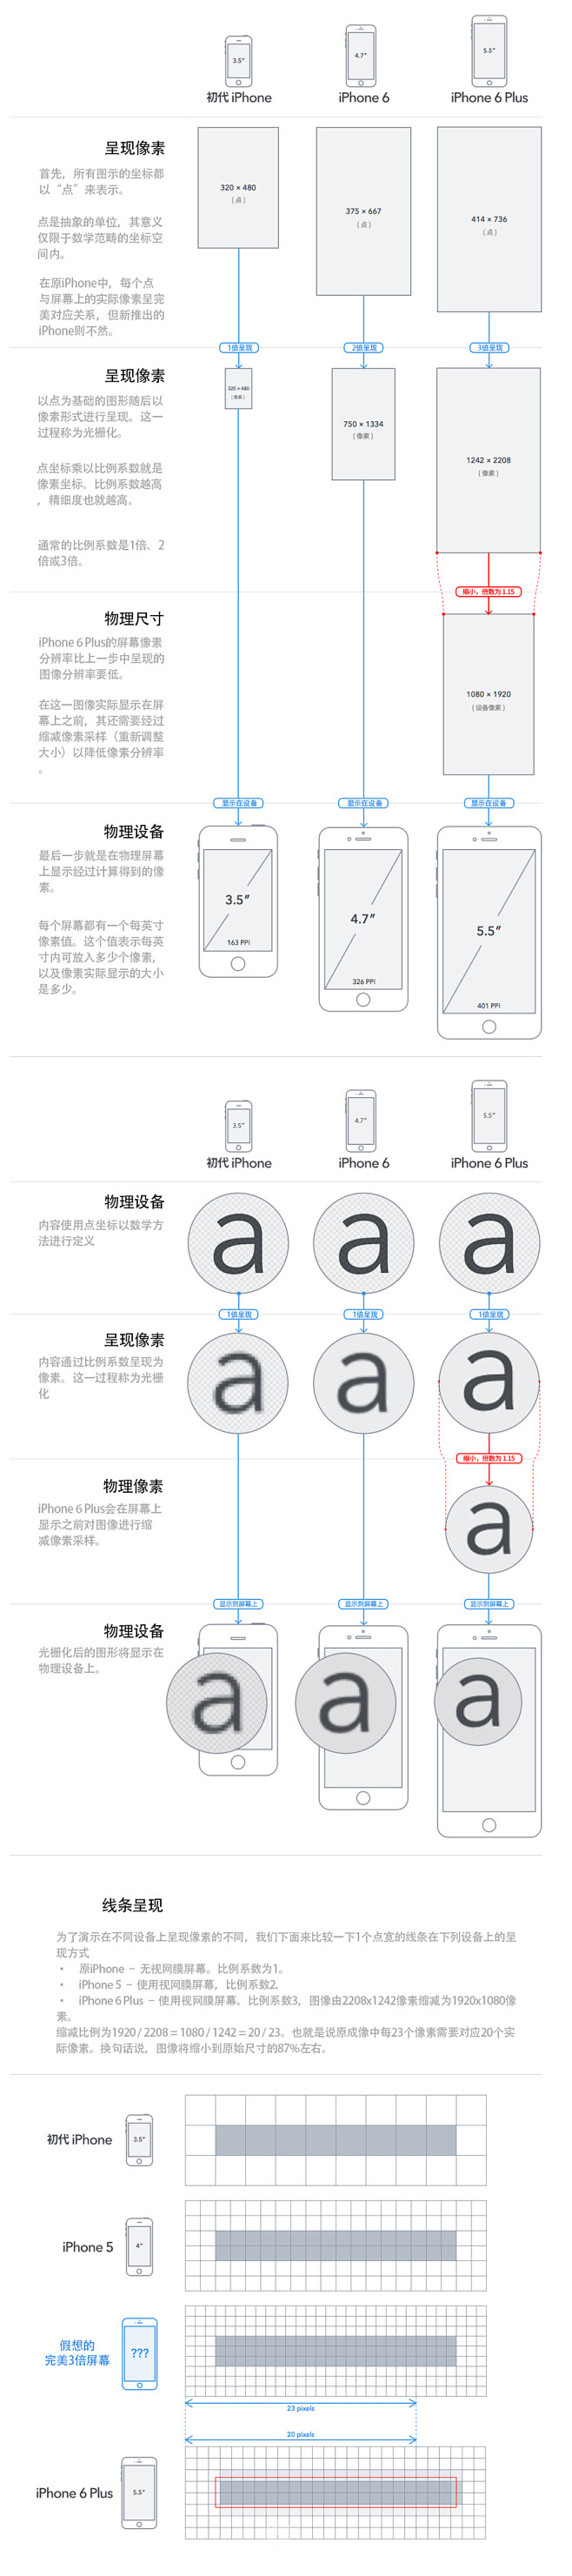 iPhone 6 屏幕解密-UI中国-专...